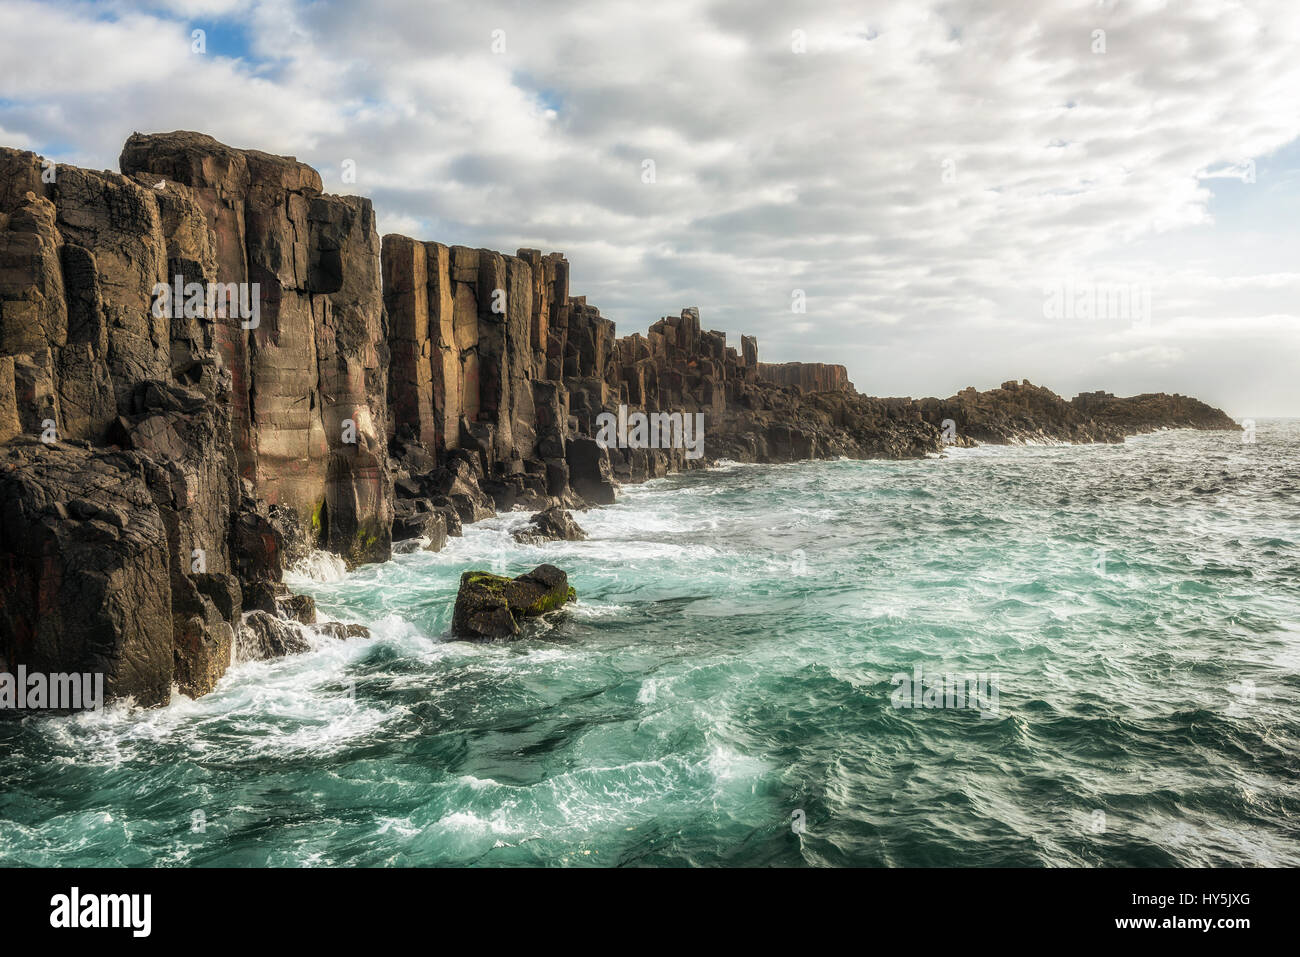 Pointe Bombo Carrière. Il s'agit d'une des formations rocheuses côtières à kiama, Australie. L'exposition longue Banque D'Images